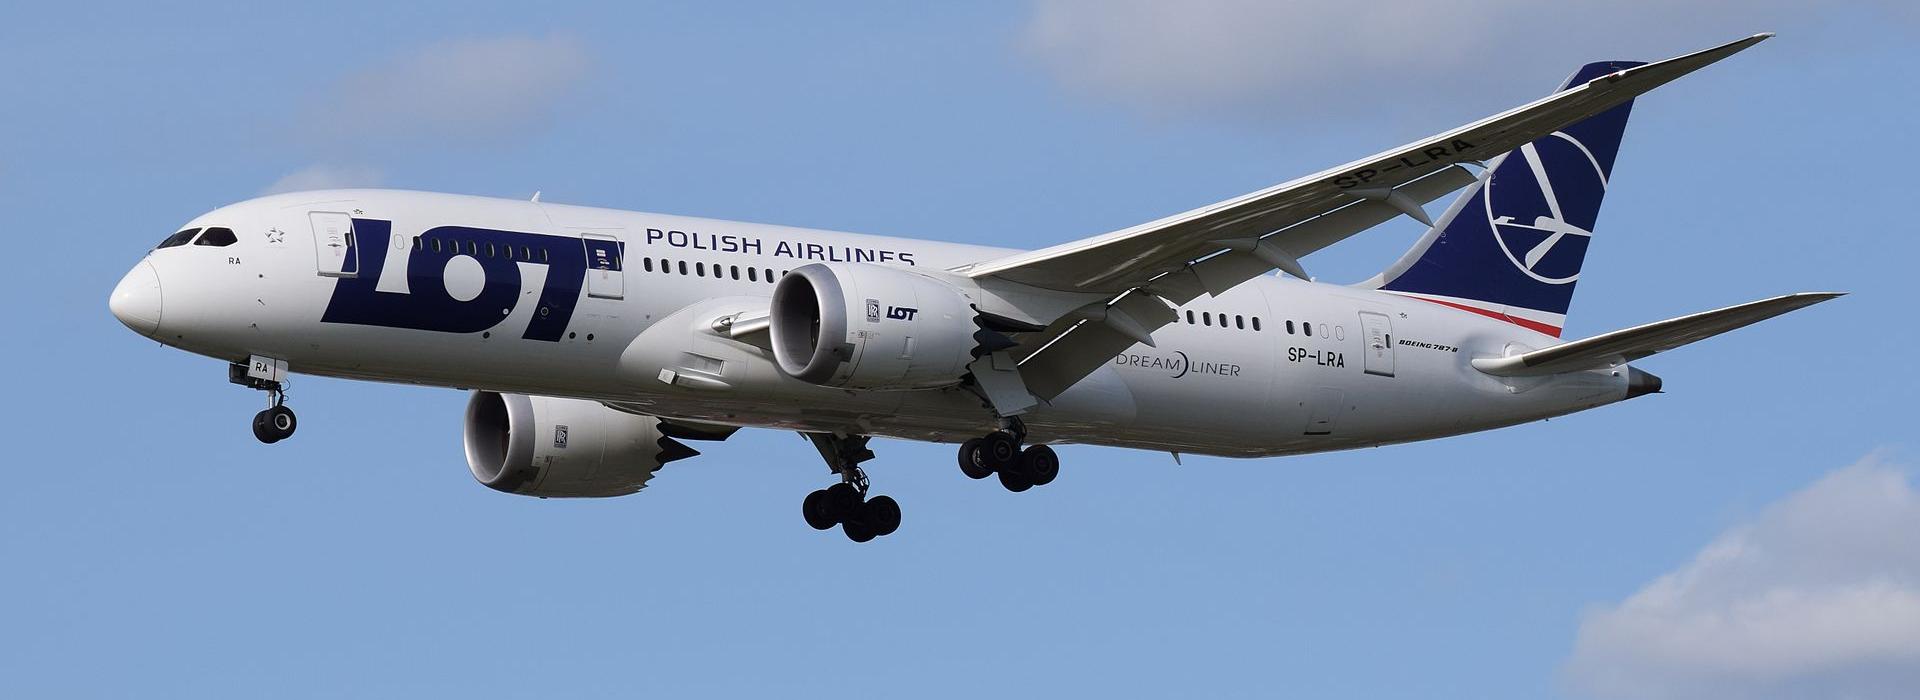 LOT-Polish Airlines (LO) ✈️ Günstige Flüge buchen